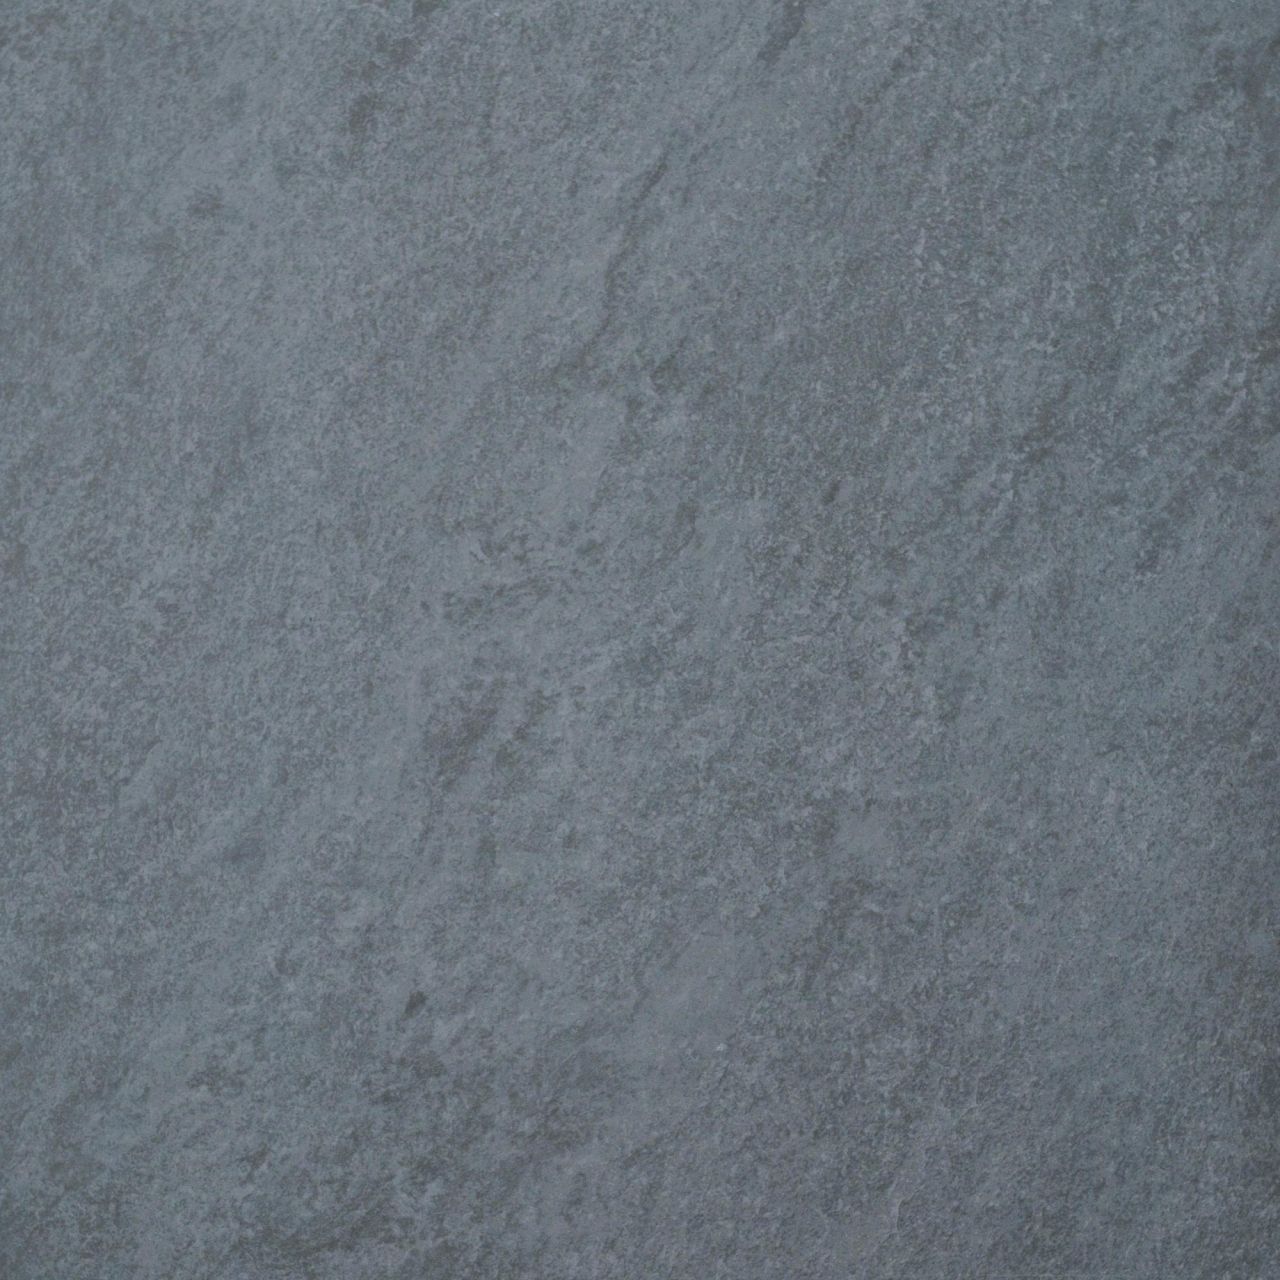 Terrassenplatte Feinsteinzeug Manhatten 60 x 60 x 2 cm dunkelgrau von Euro Stone